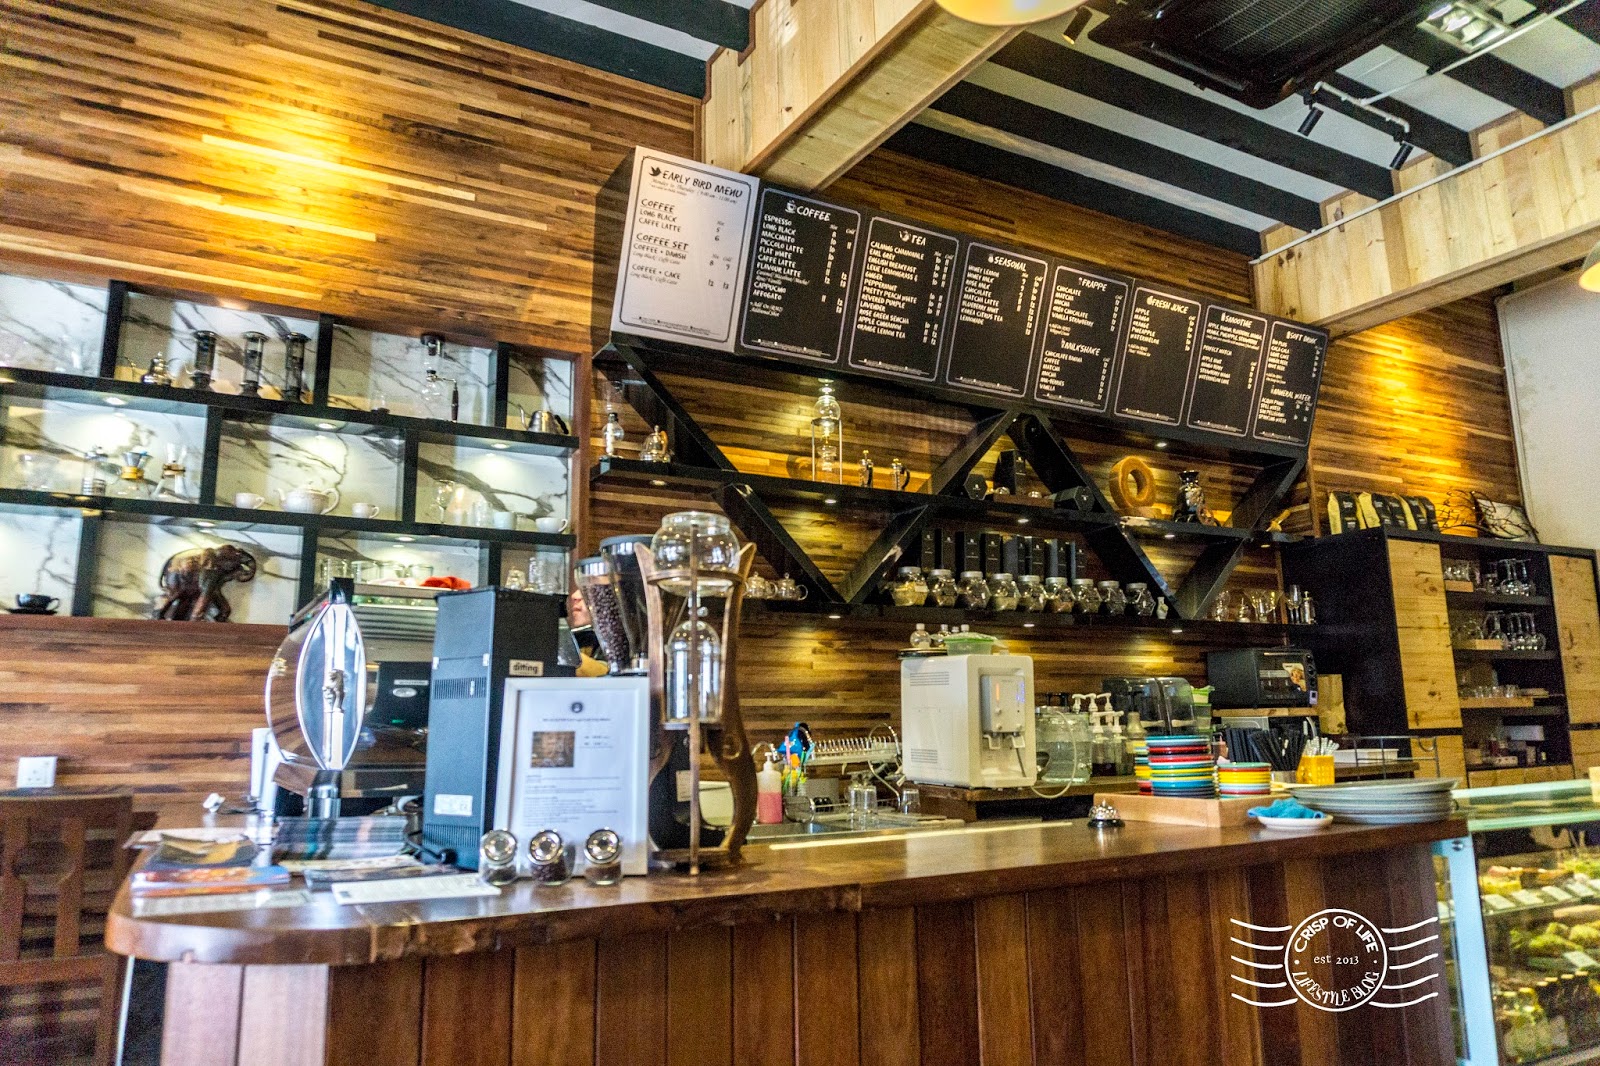 Gayo Coffee @ Beach Street, Georgetown, Penang